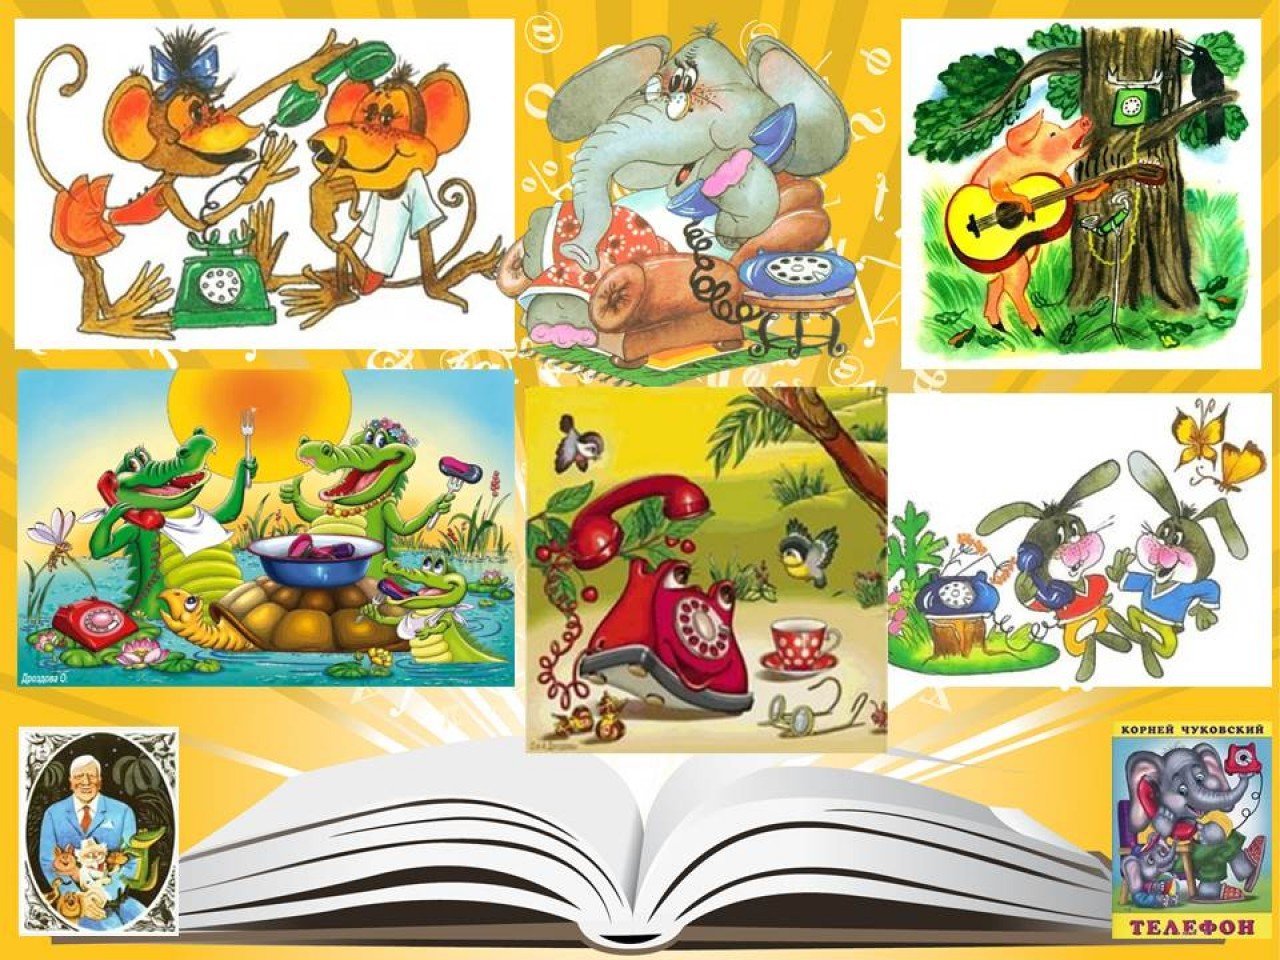 Коллаж героев книг Корнея Чуковского для детей